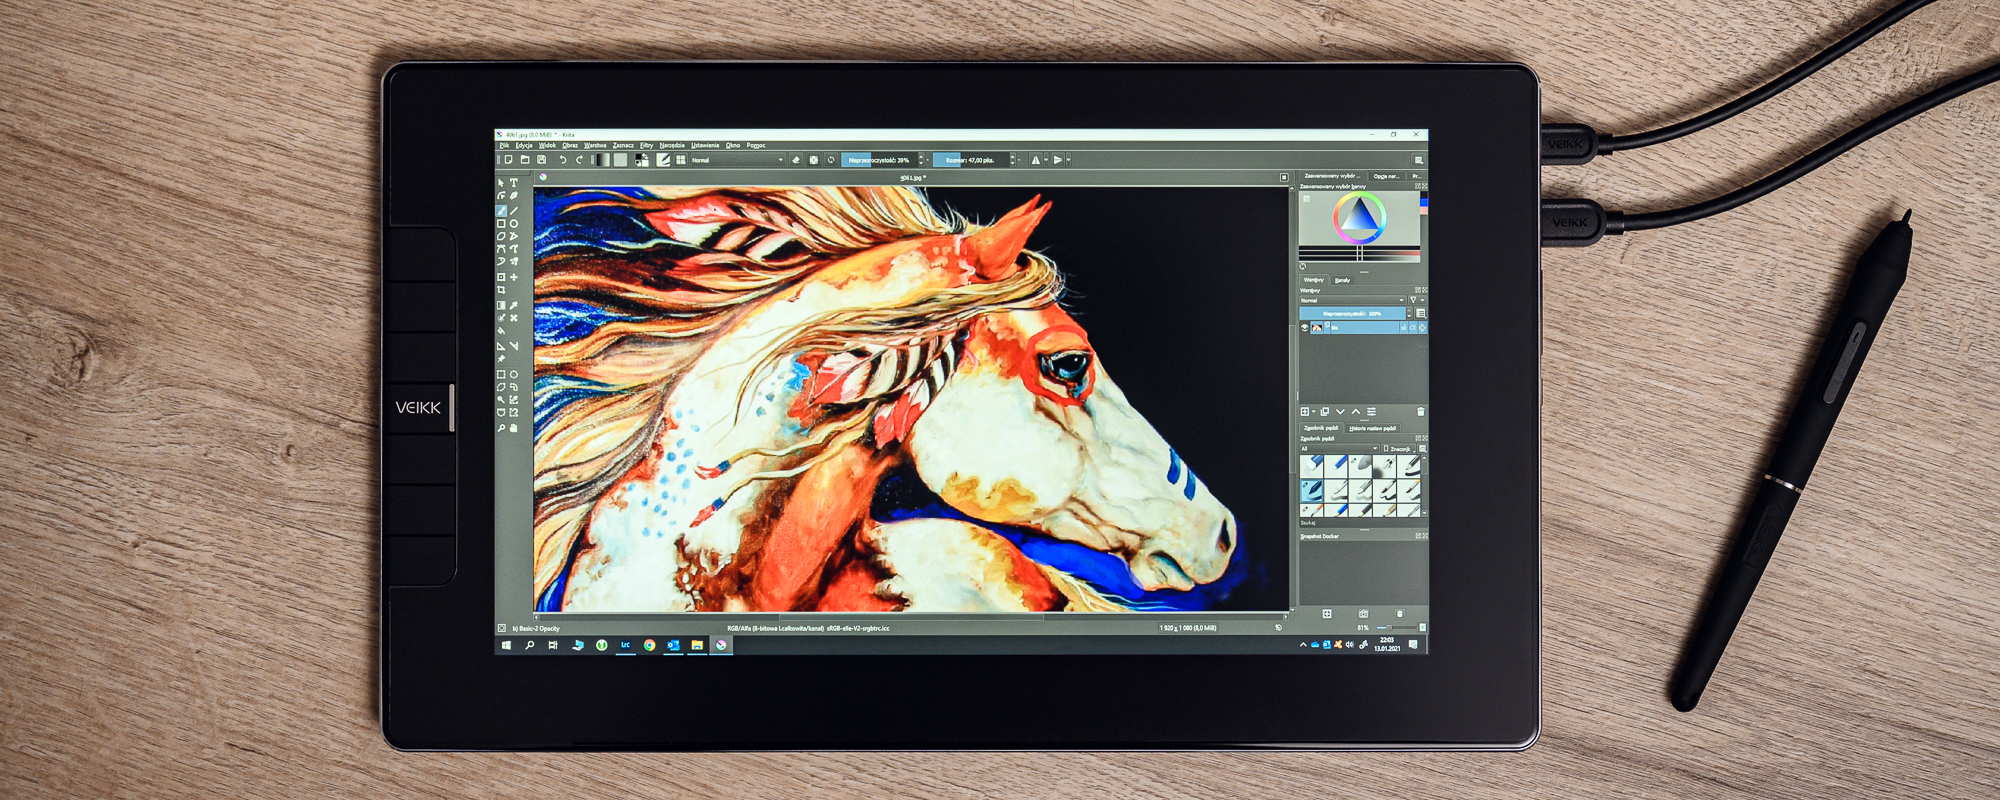 Zdjęcie - tablet graficzny z ekranem LCD leżący na podłodze z jasnych paneli